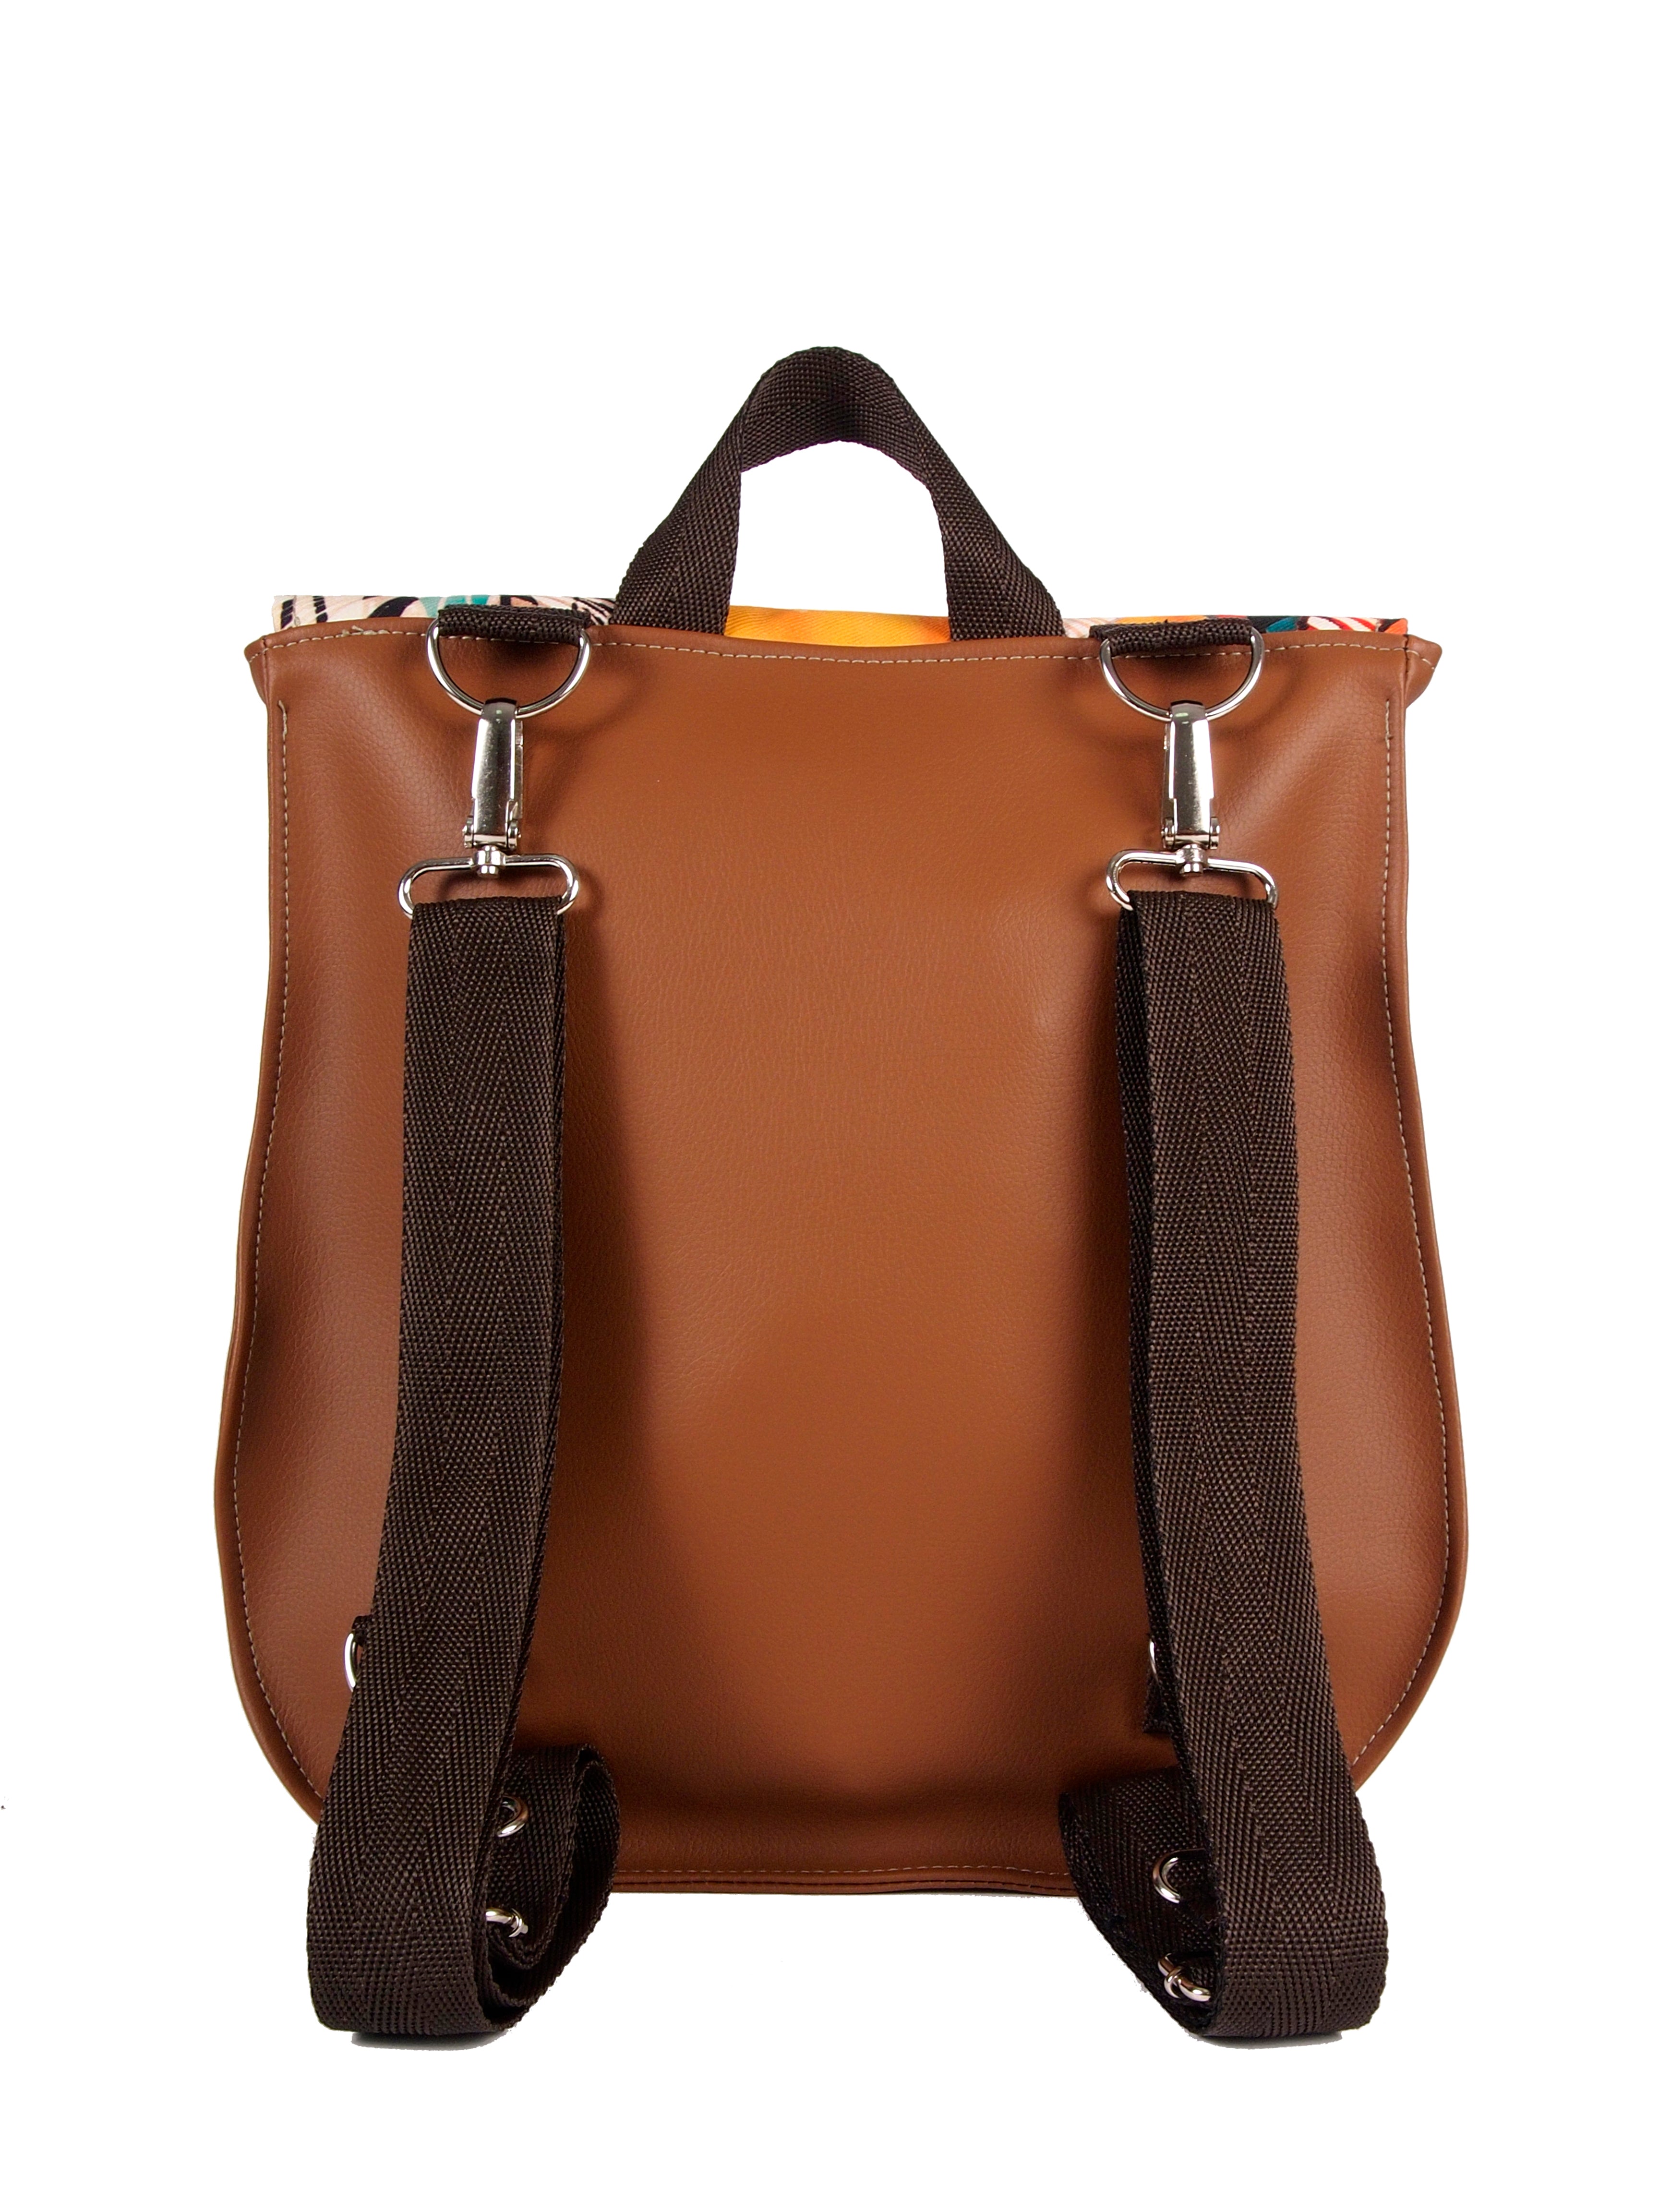 Bardo backpack&bag - Chocolate & canela - Premium bardo backpack&bag from BARDO ART WORKS - Just lvabstract, backpack, bag, black, dark blue, dots, floral, graphic, handmade, messenger, nature, vegan leather, work85.00! Shop now at BARDO ART WORKS